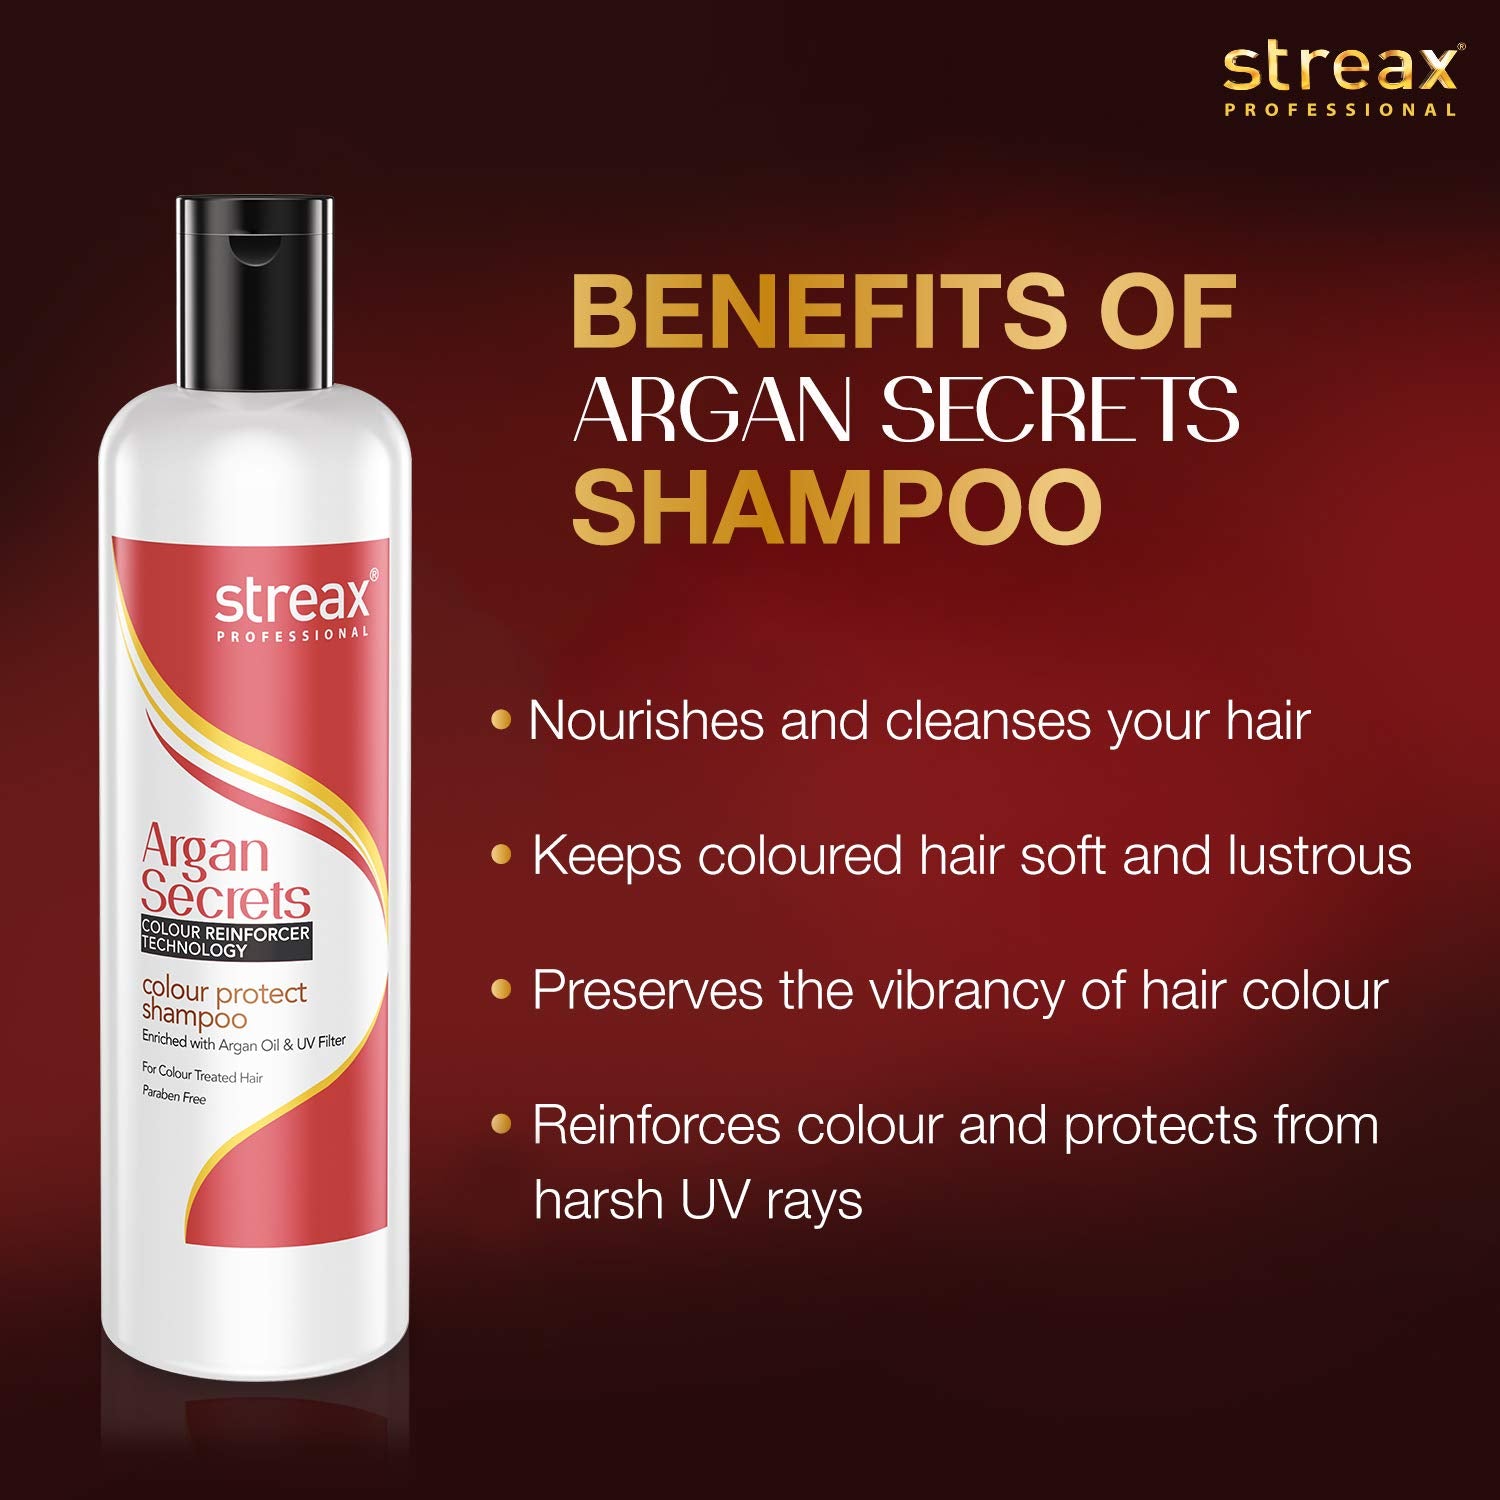 Streax Argan Secrets Color Protect Shampoo